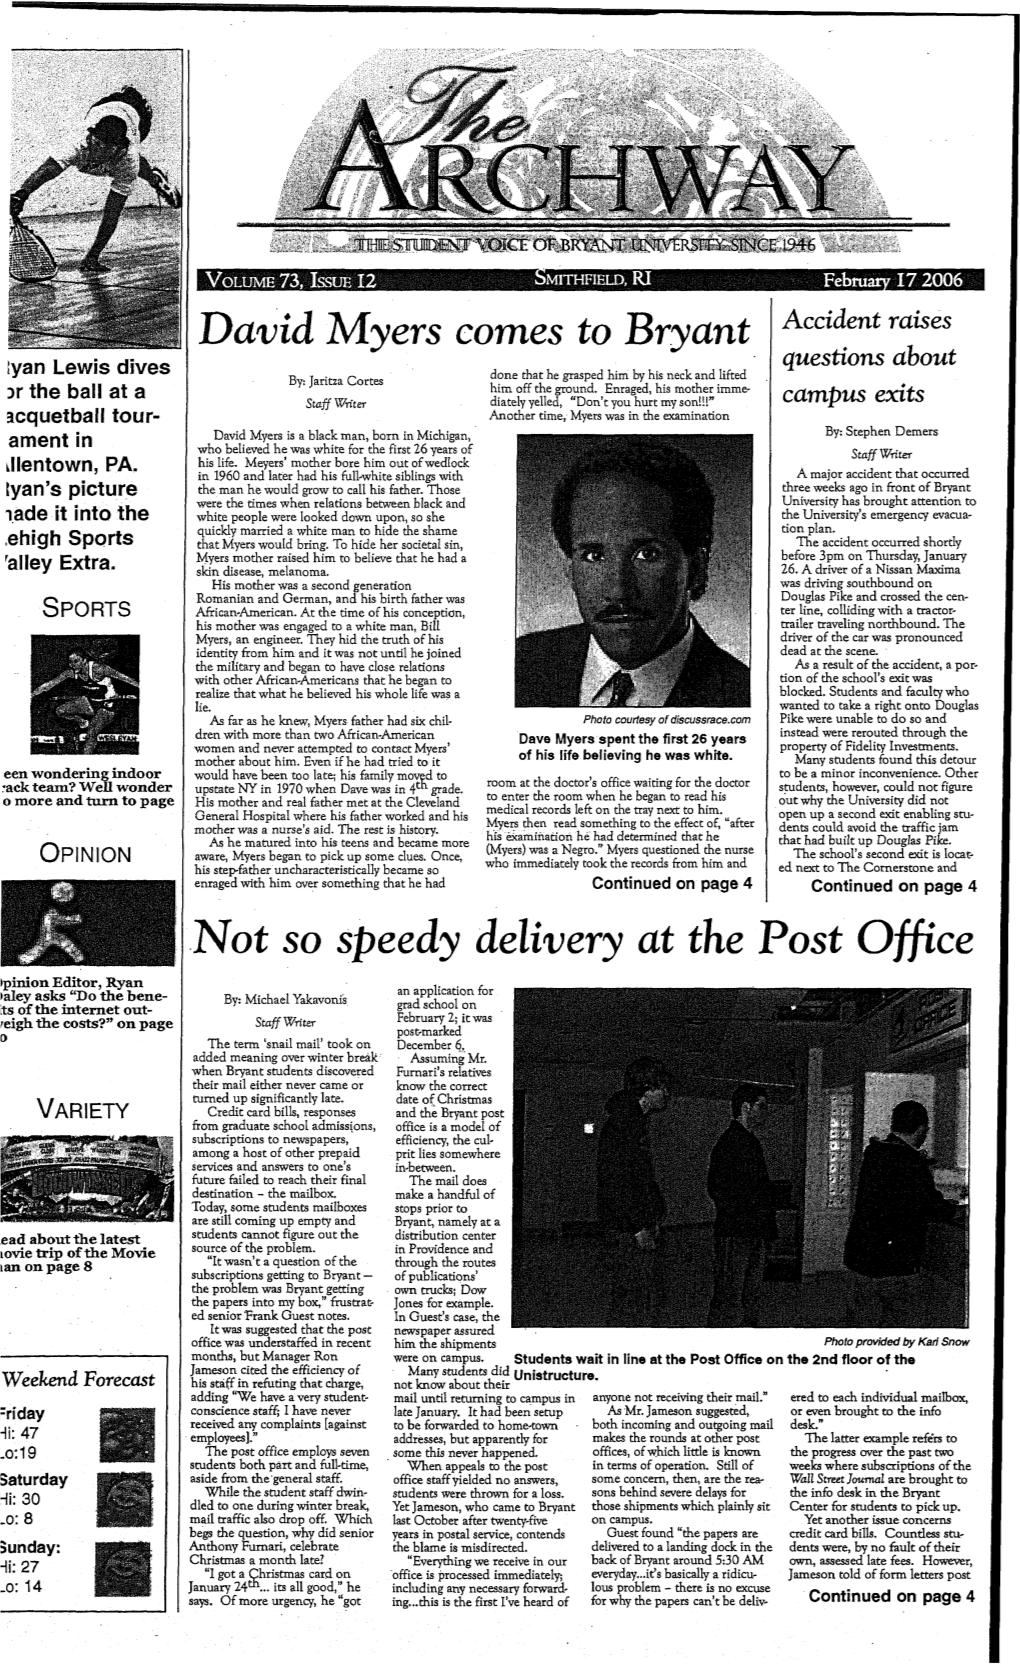 V. 73, Issue 12, February 17, 2006